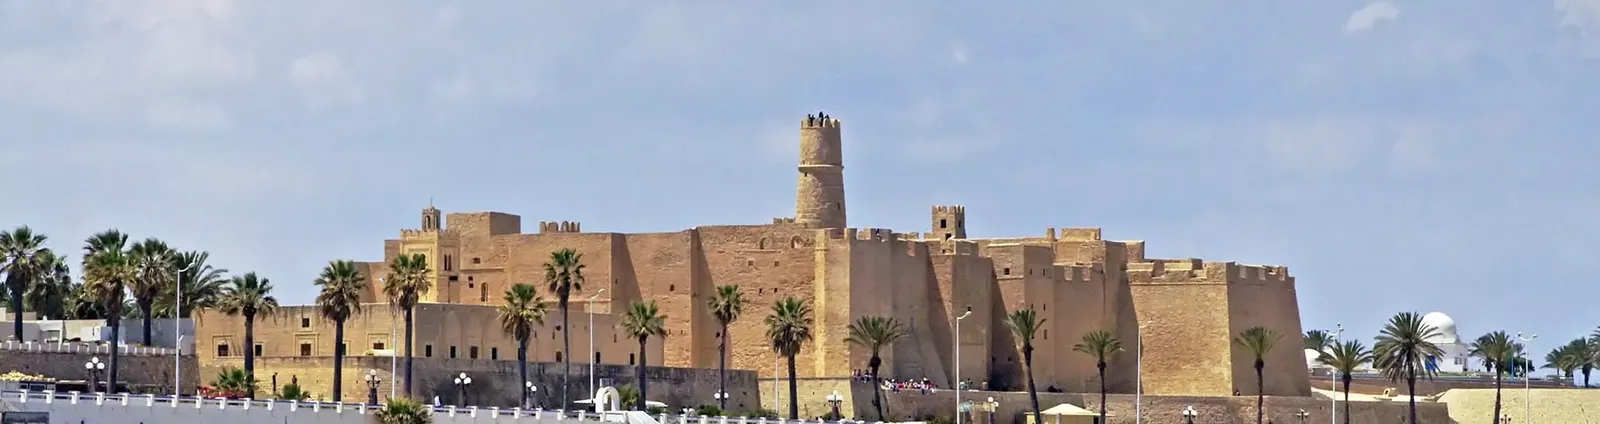 Monastir | Monastir Governorate Region, Tunisia - Rated 4.1